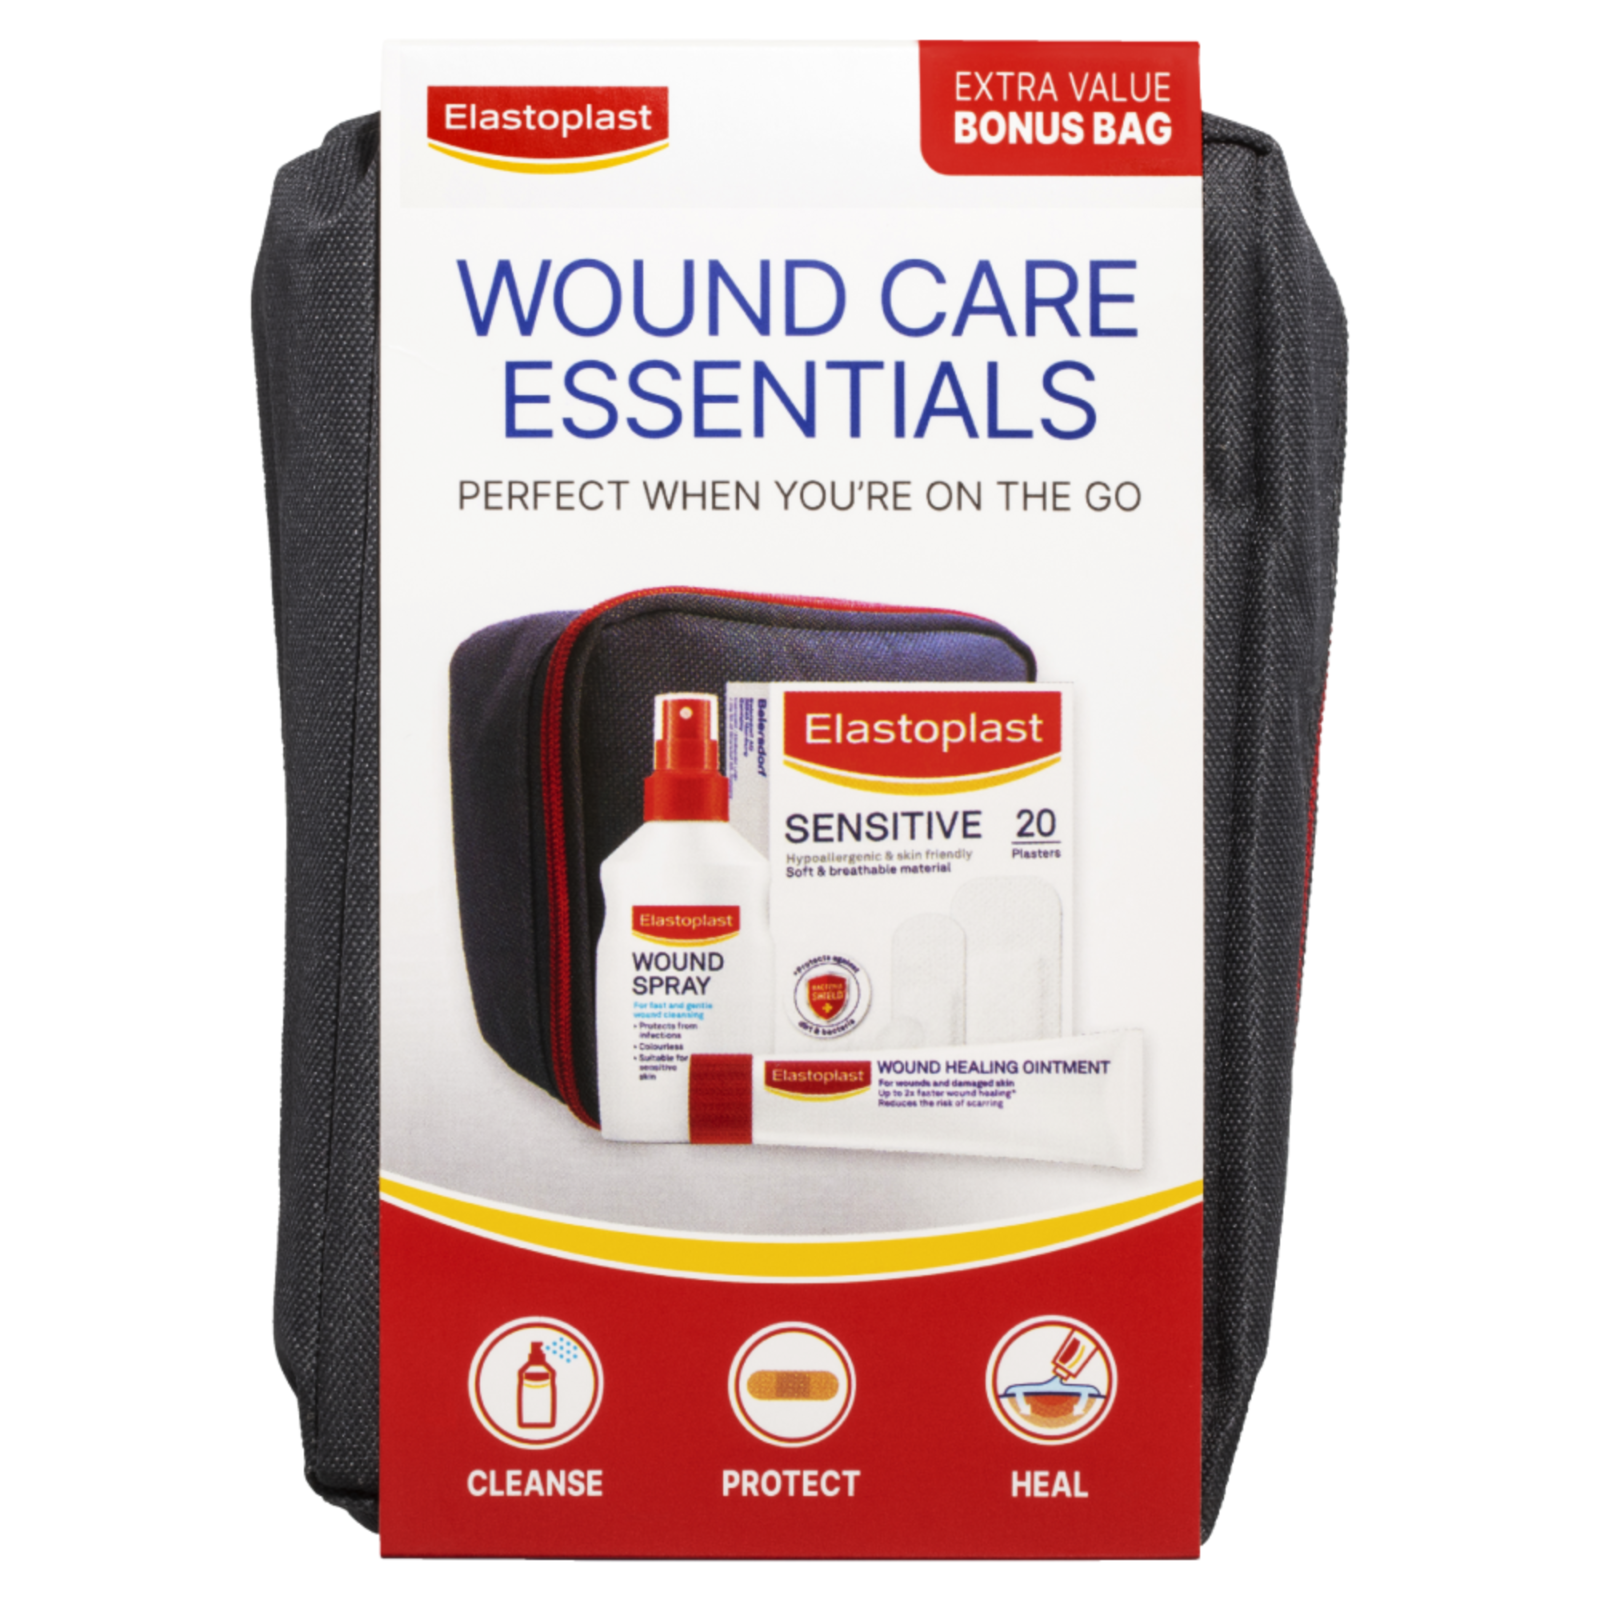 Primary image for Elastoplast Wound Care Essentials Extra Value Bonus Bag